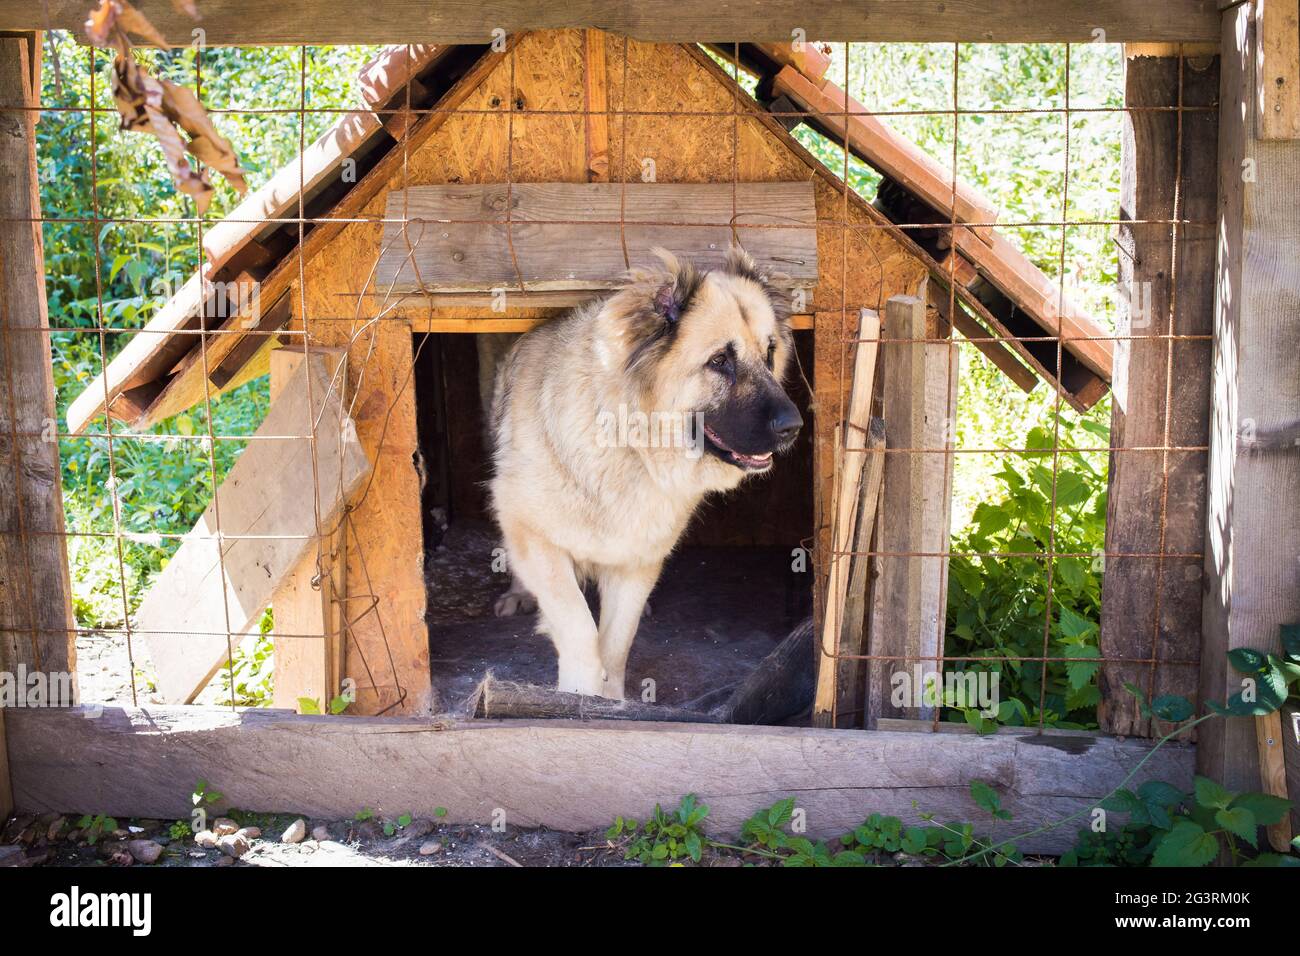 Schöner brauner Bernhardiner Hund, der durch den Metallzaun guckt.  Menschliche Hand in Streichelposition Stockfotografie - Alamy